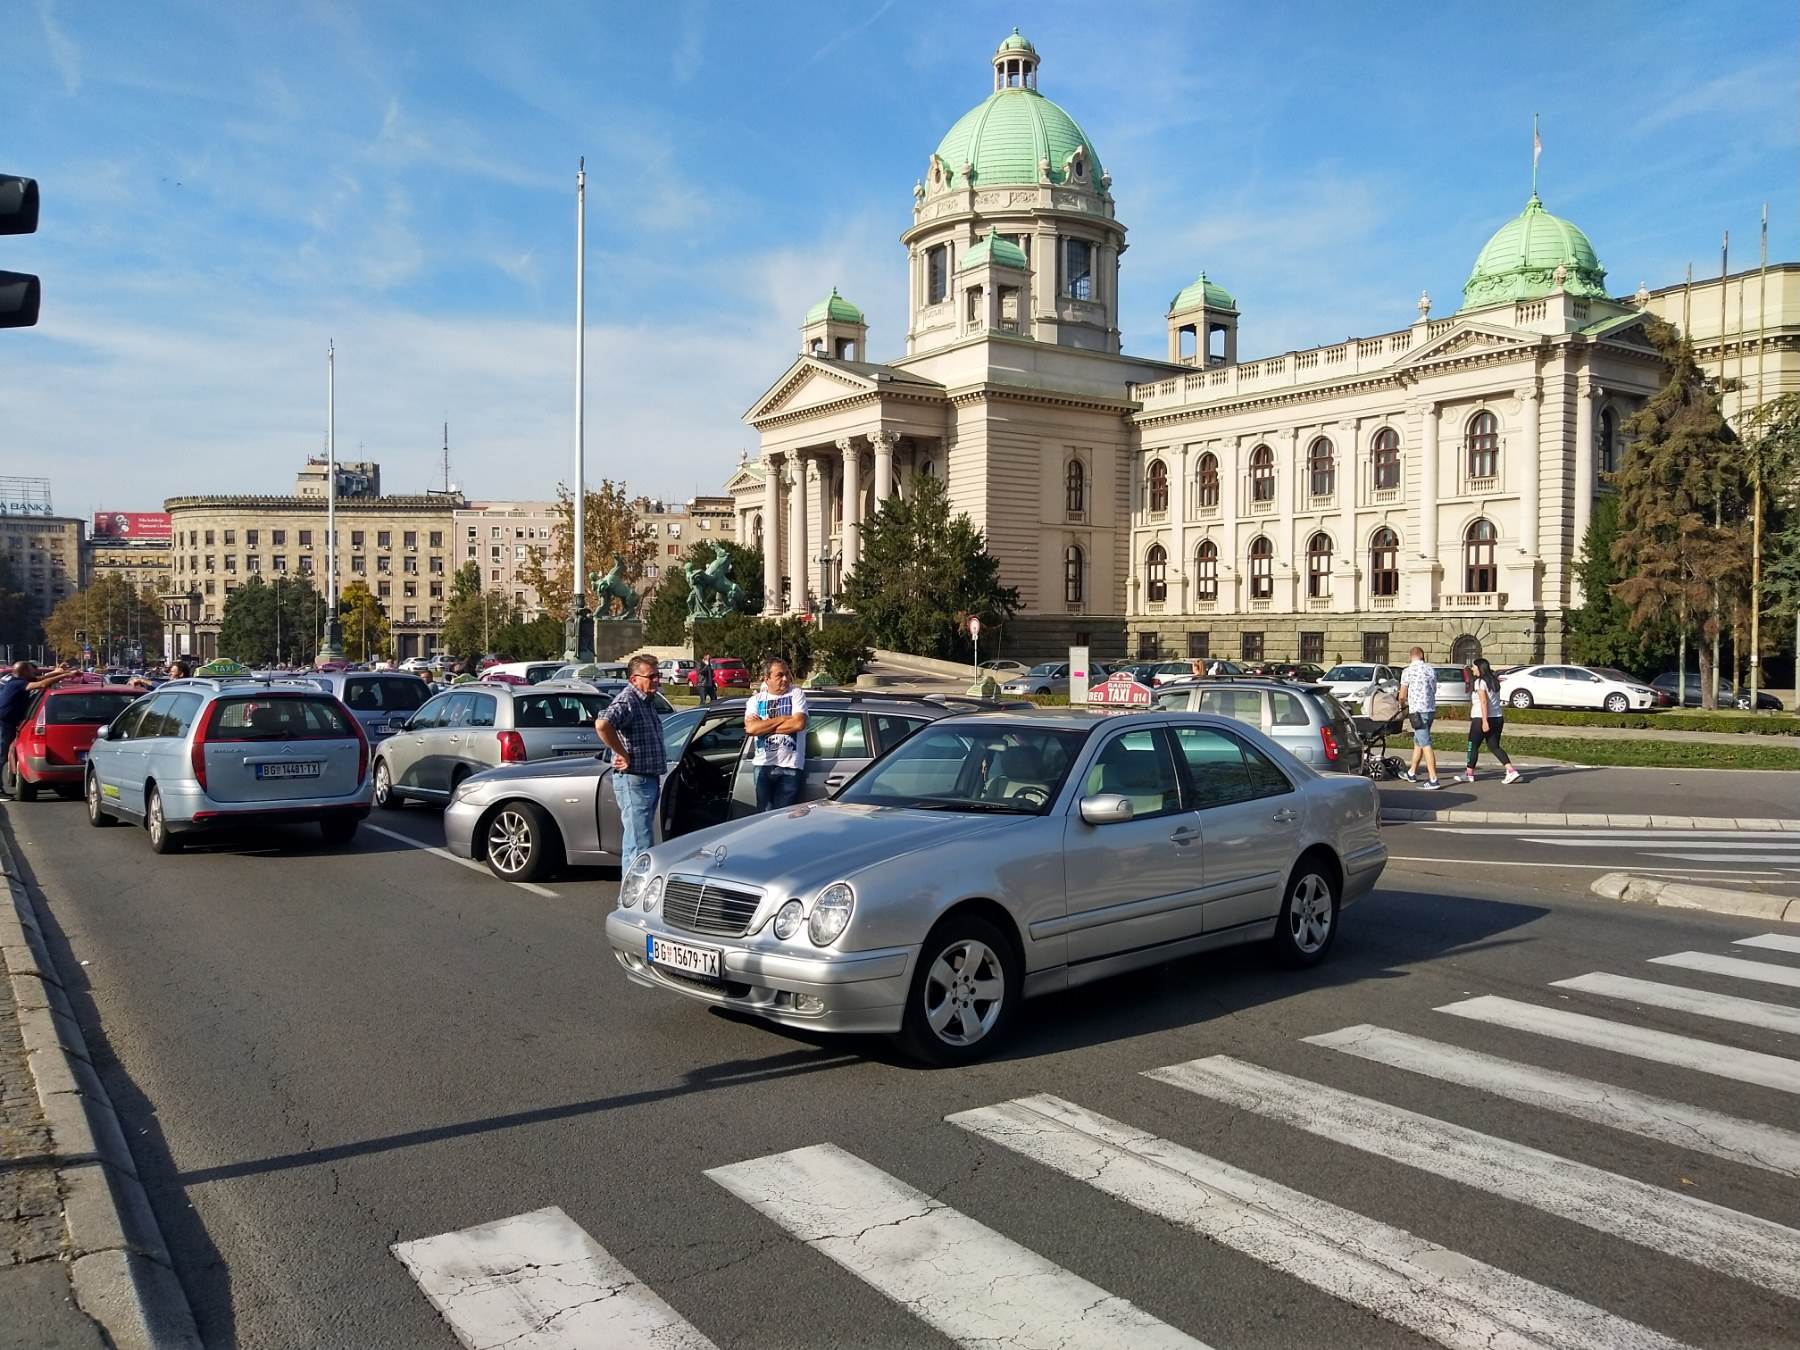  Država će kupiti nova vozila taksistima? 